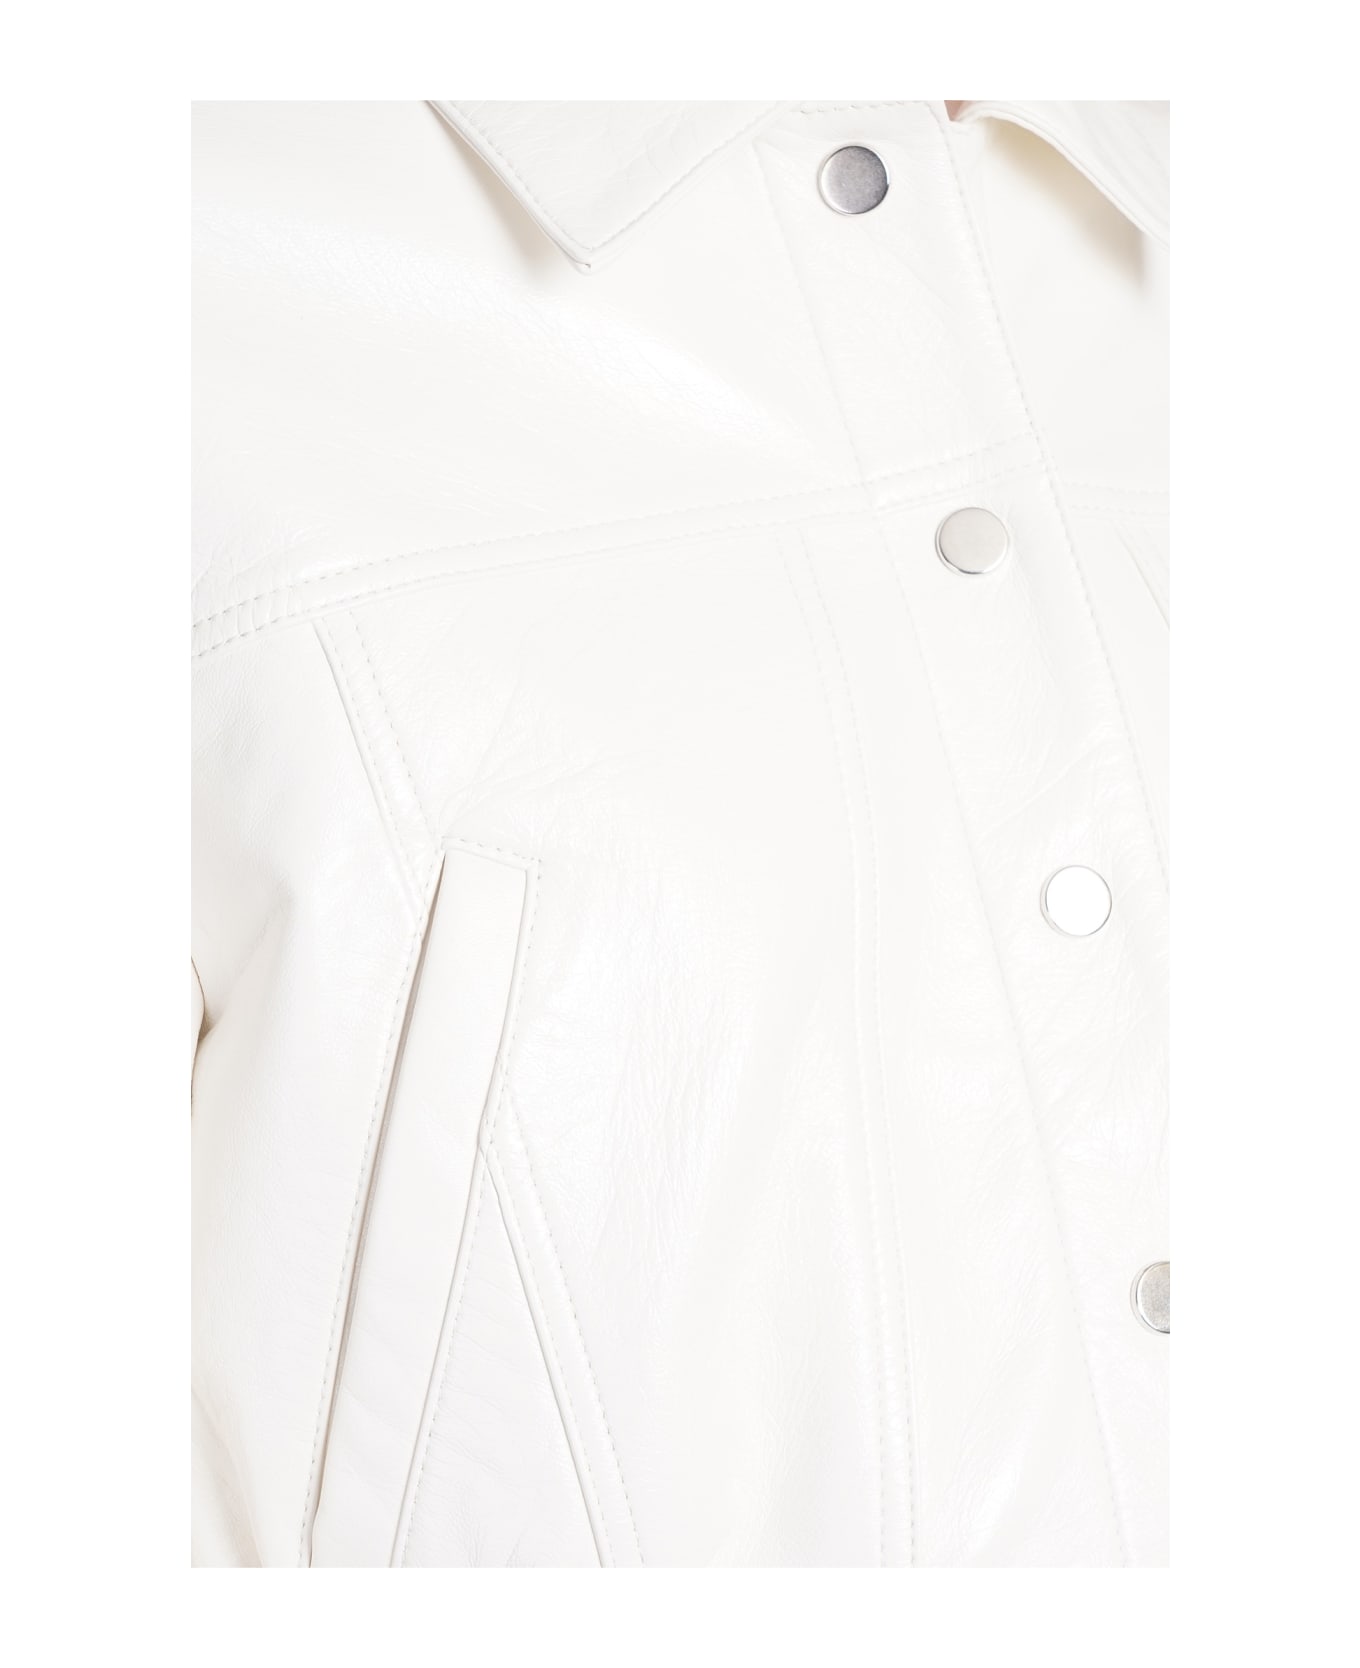 IRO Bulut Leather Jacket In White Leather - white